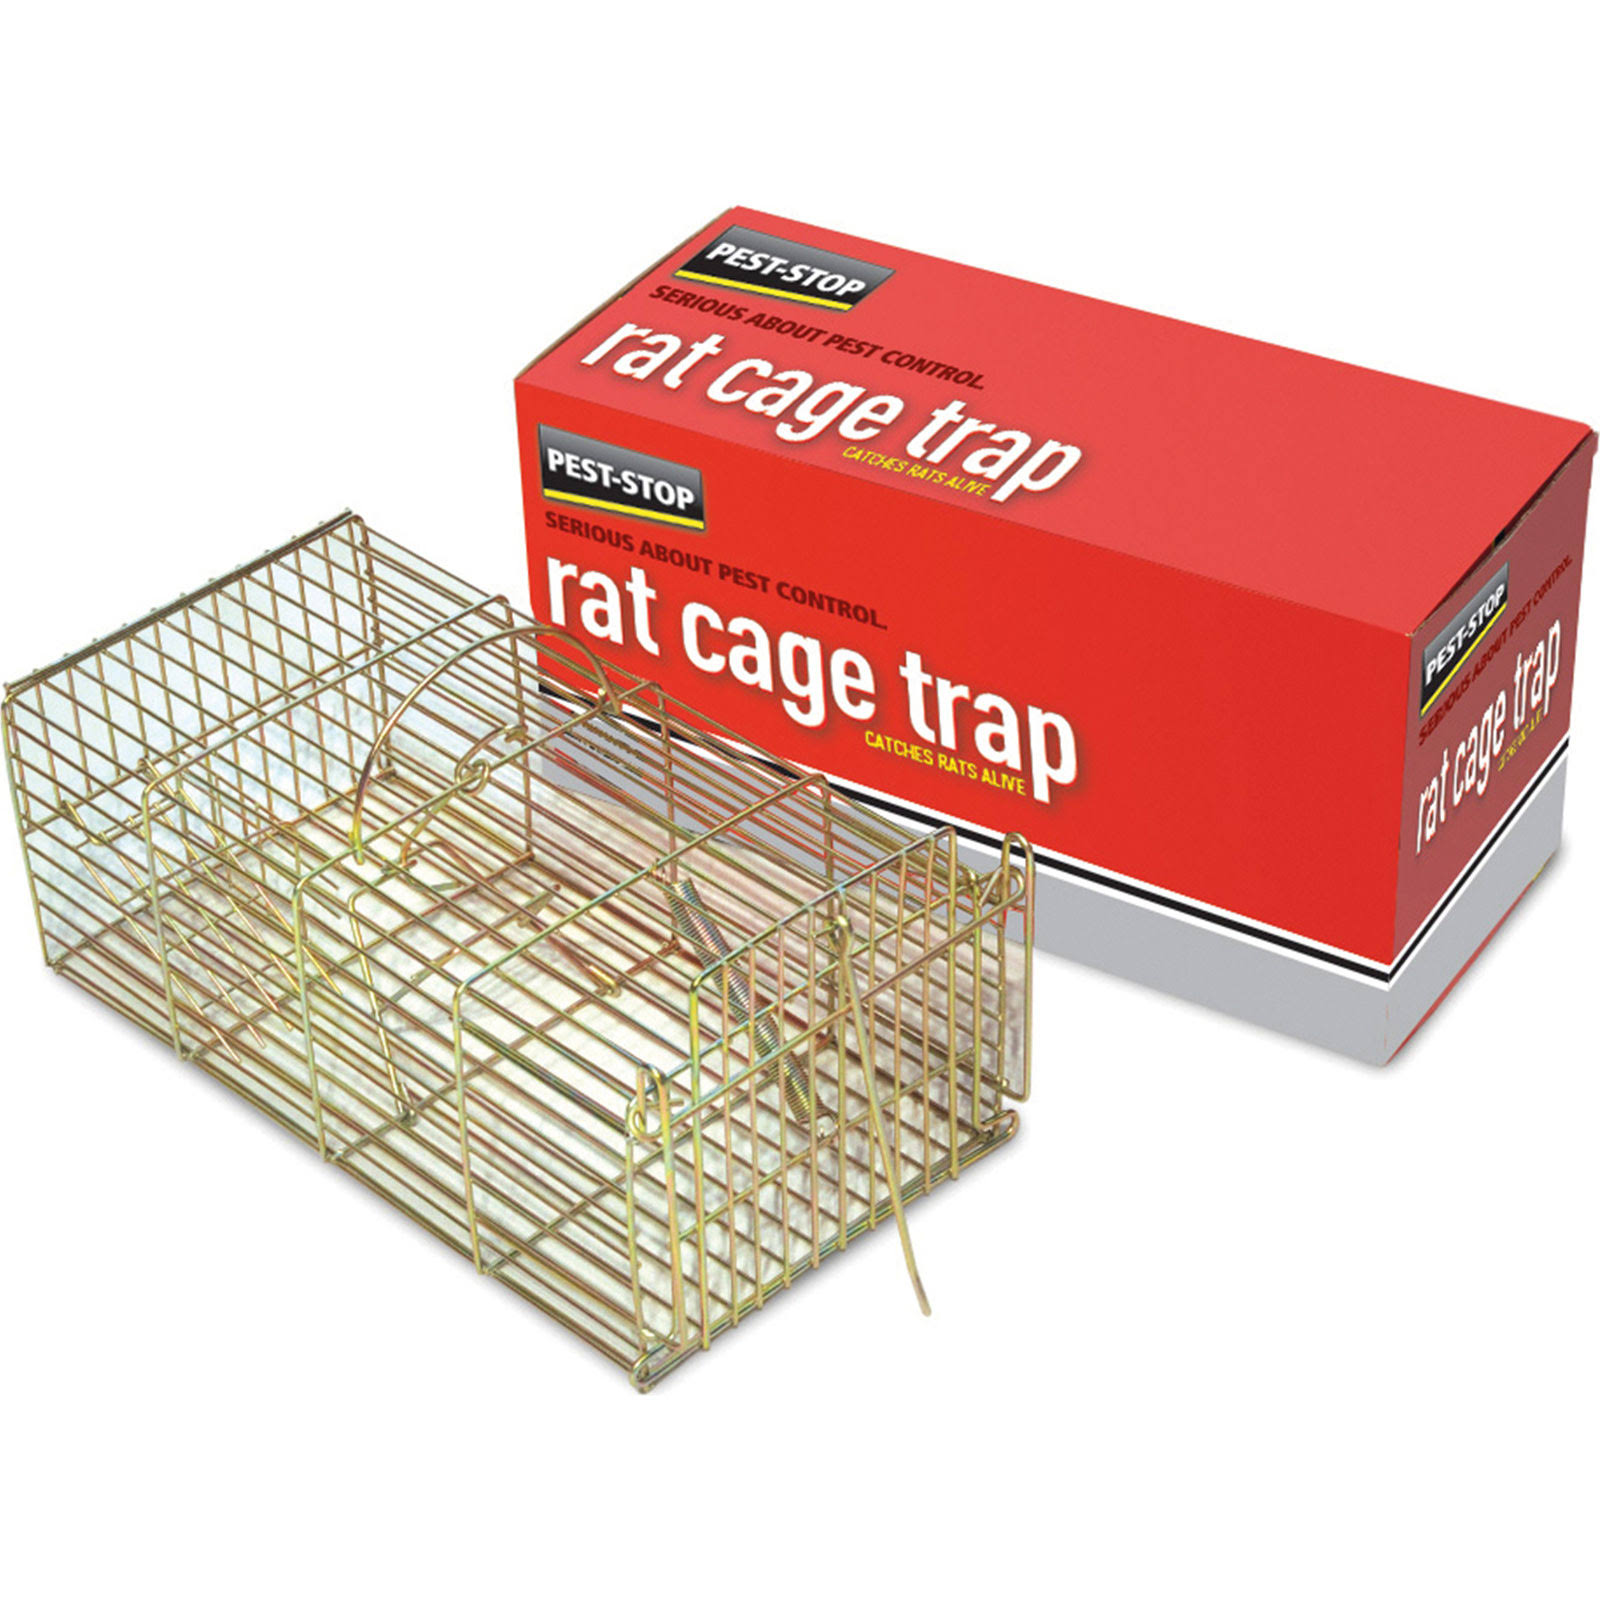 Pest-Stop Rat Cage Trap - 14"